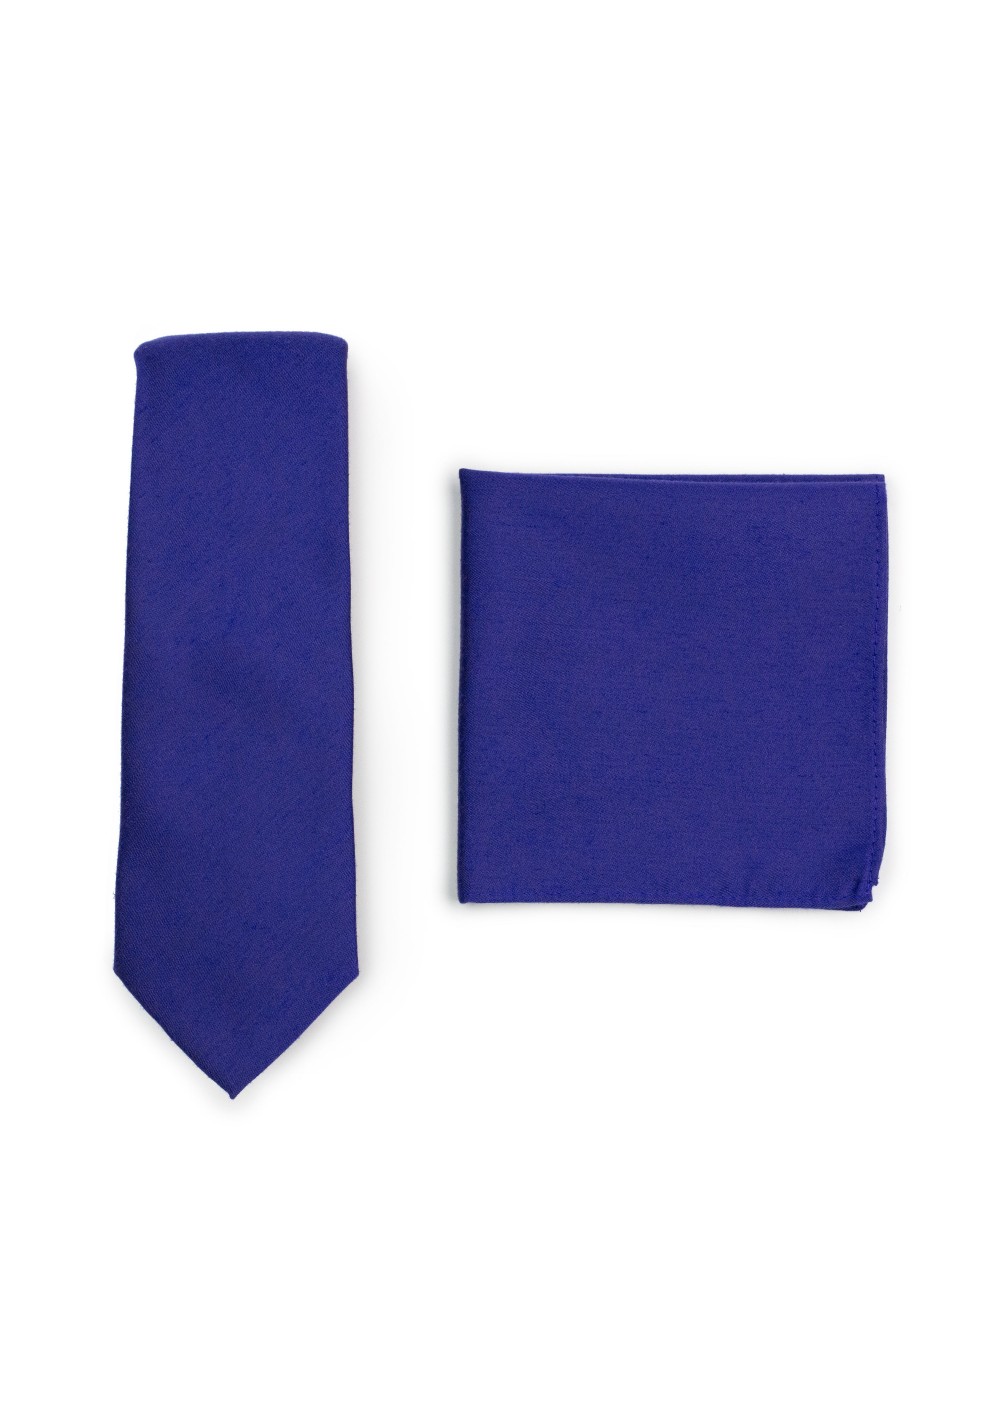 Skinny Tie Set in Ultramarine